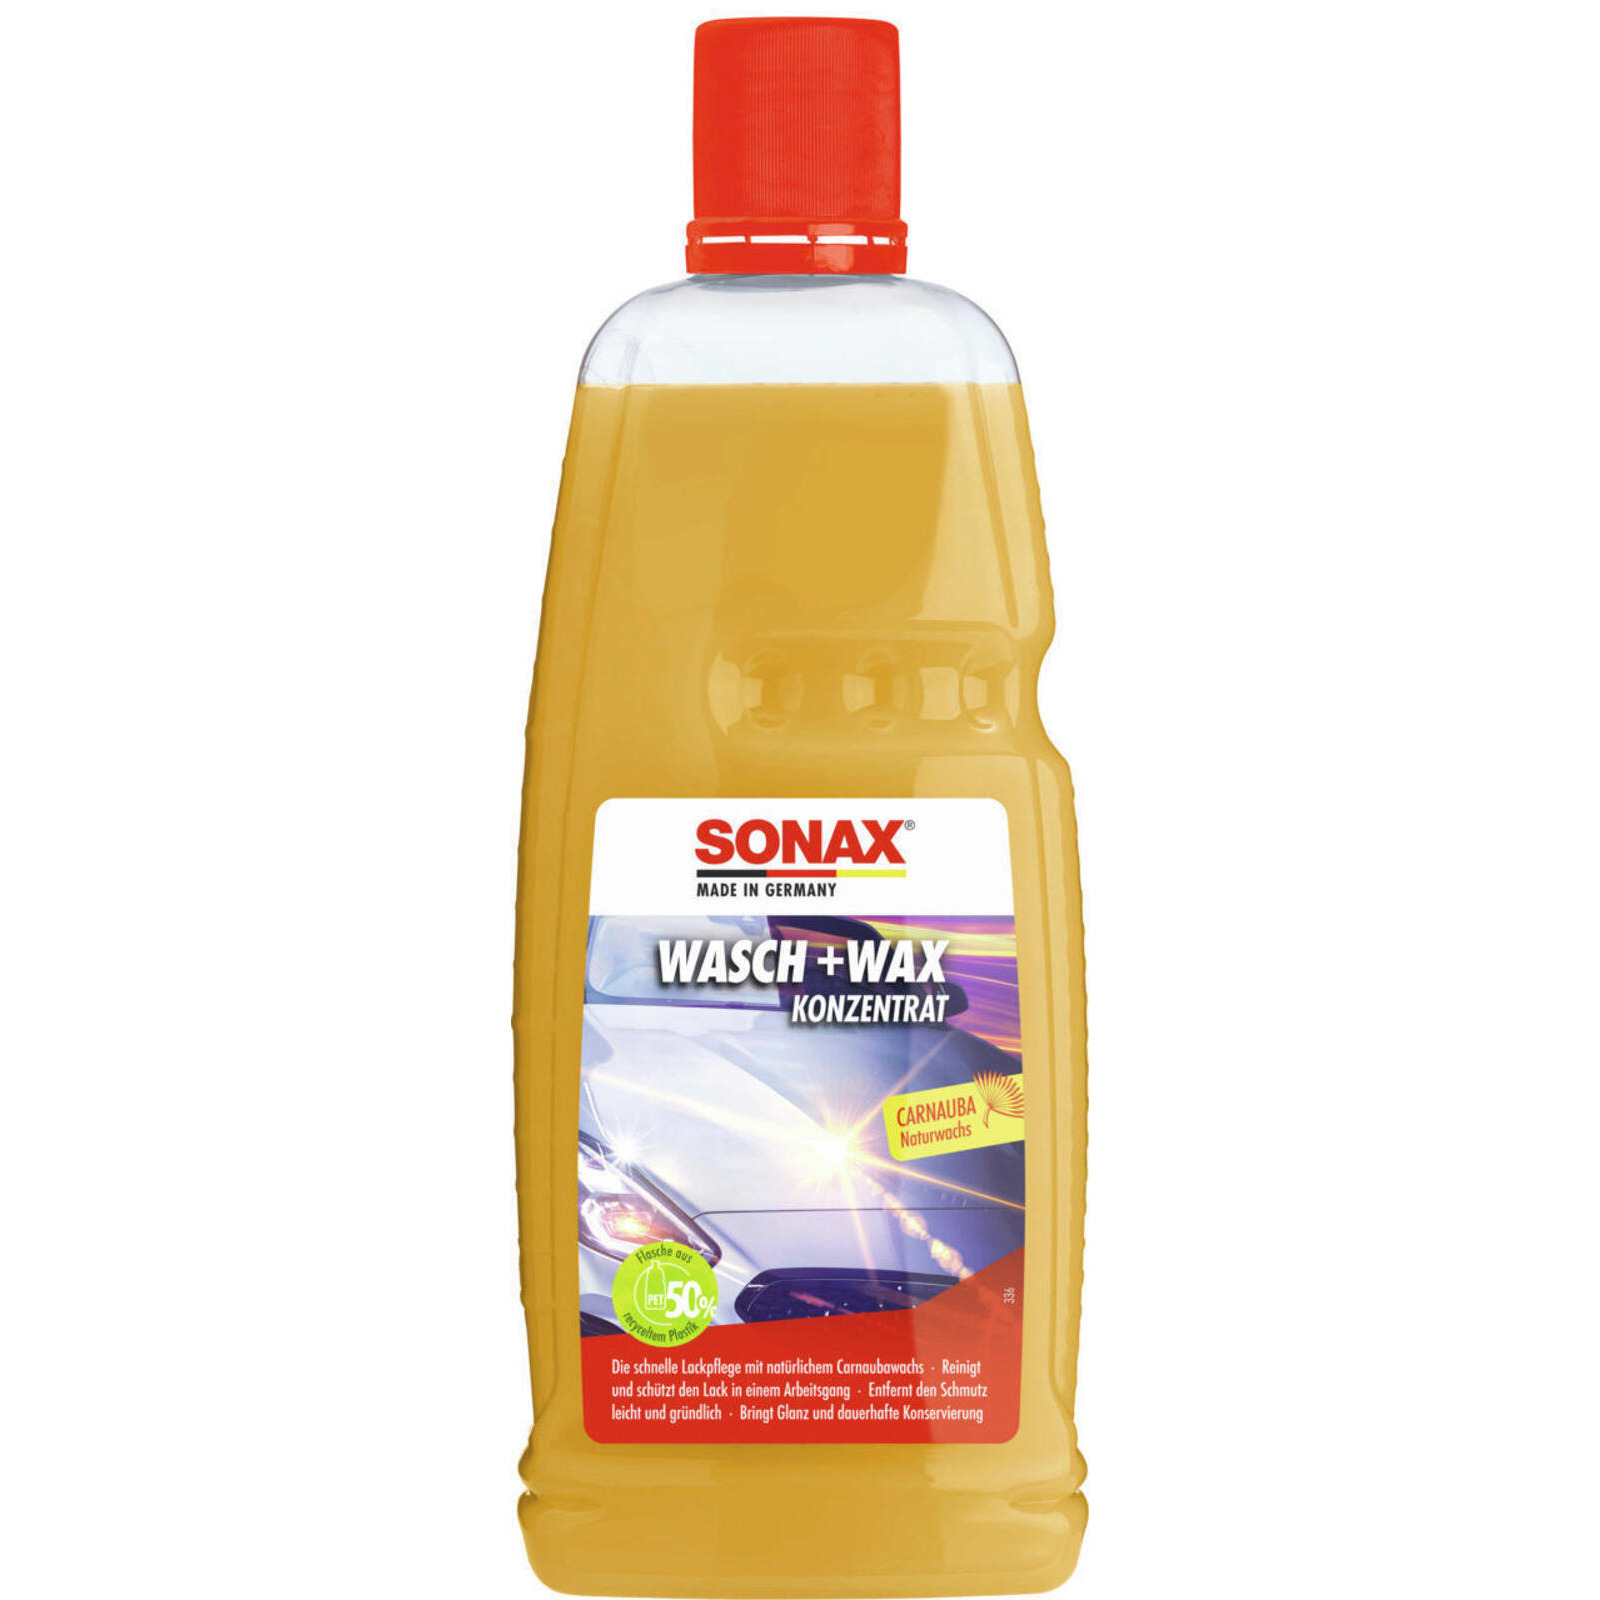 SONAX Conservation Wax Wash + Wax